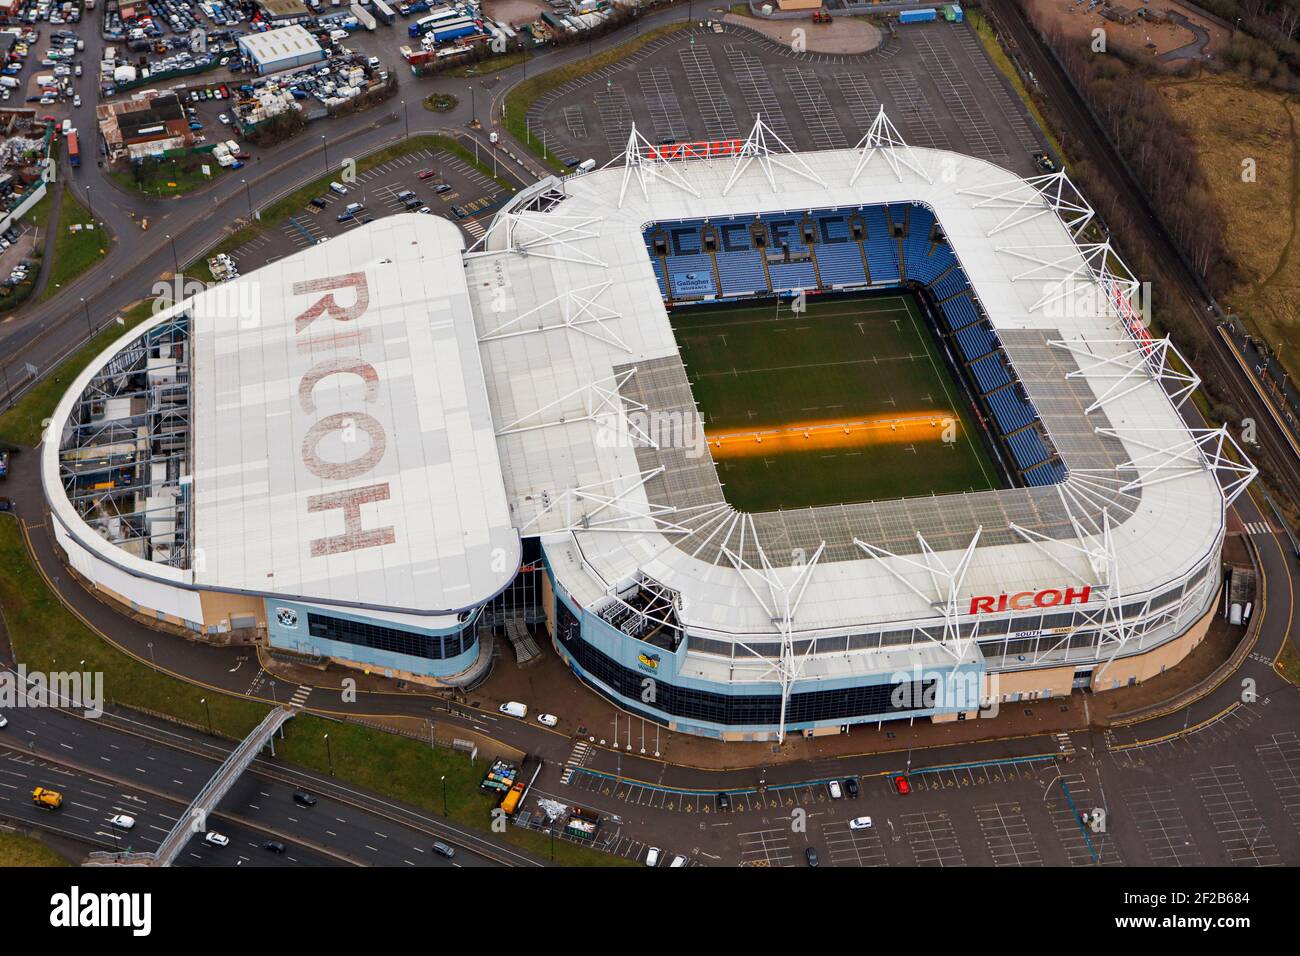 Vista aérea del Ricoh Arena en Coventry Foto de stock